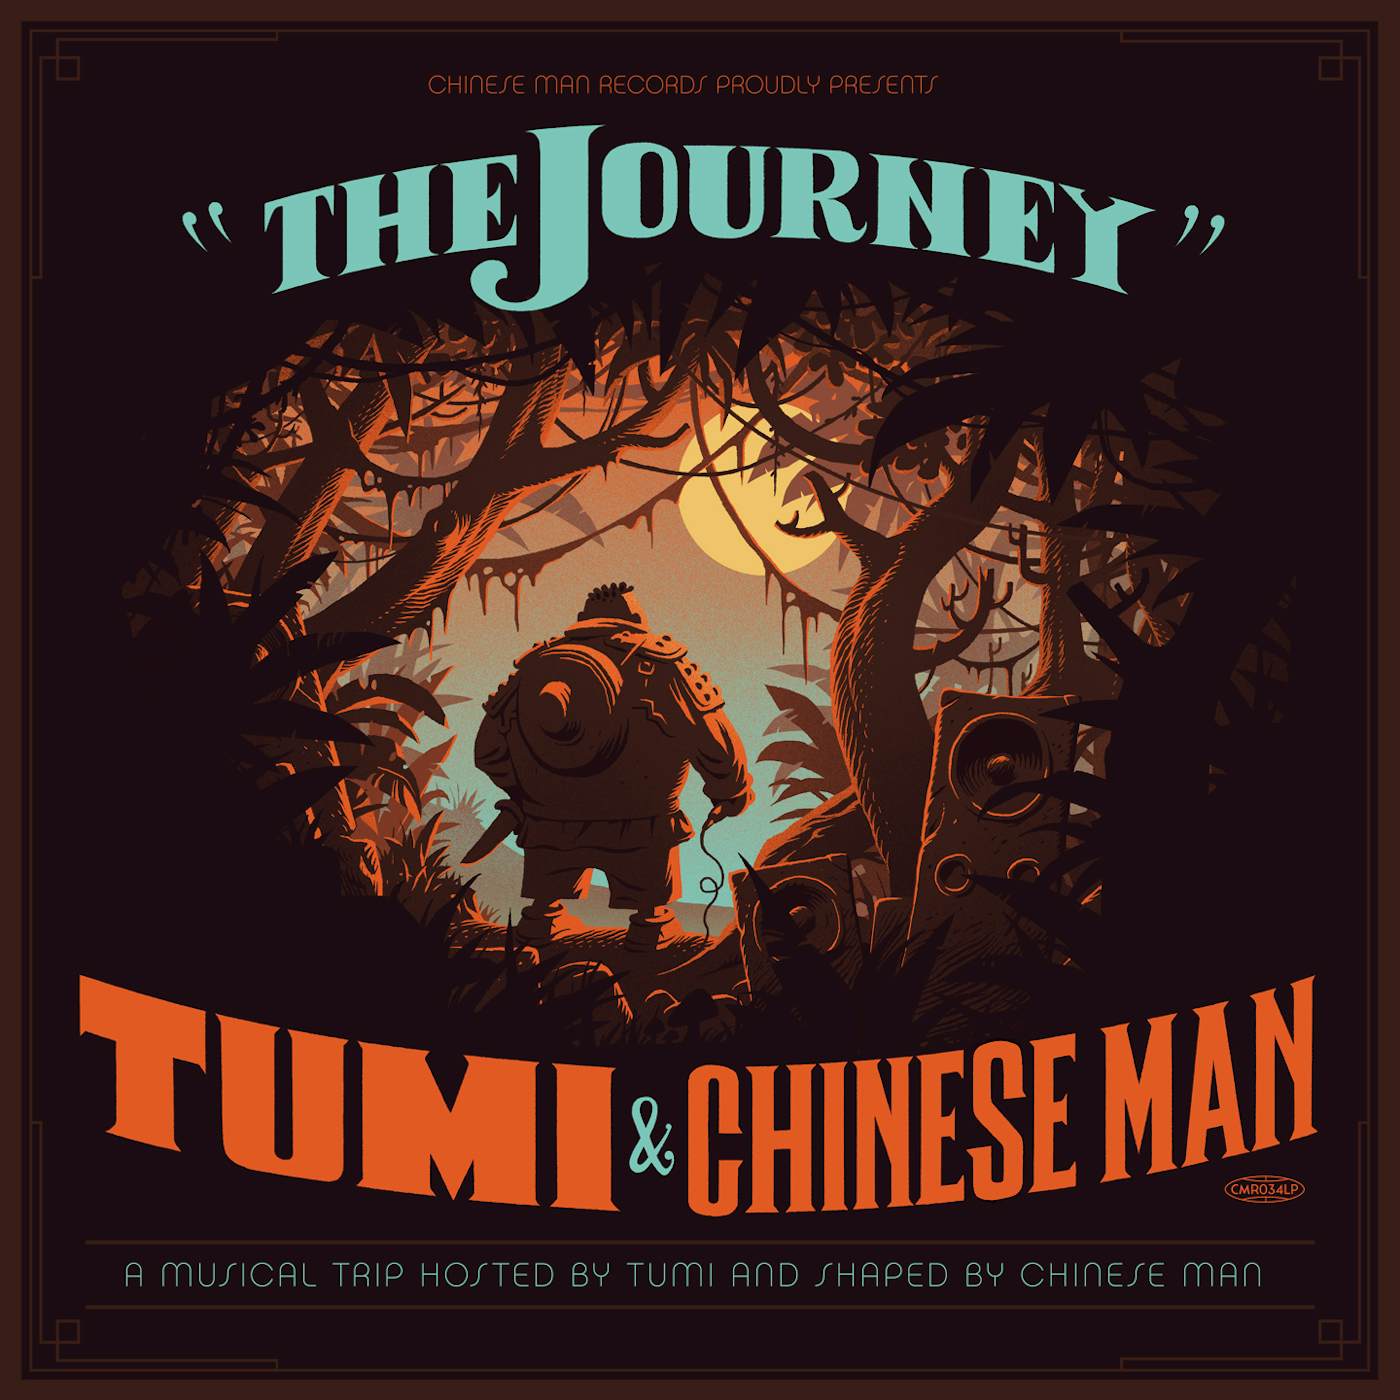 TUMI & CHINESE MAN JOURNEY CD